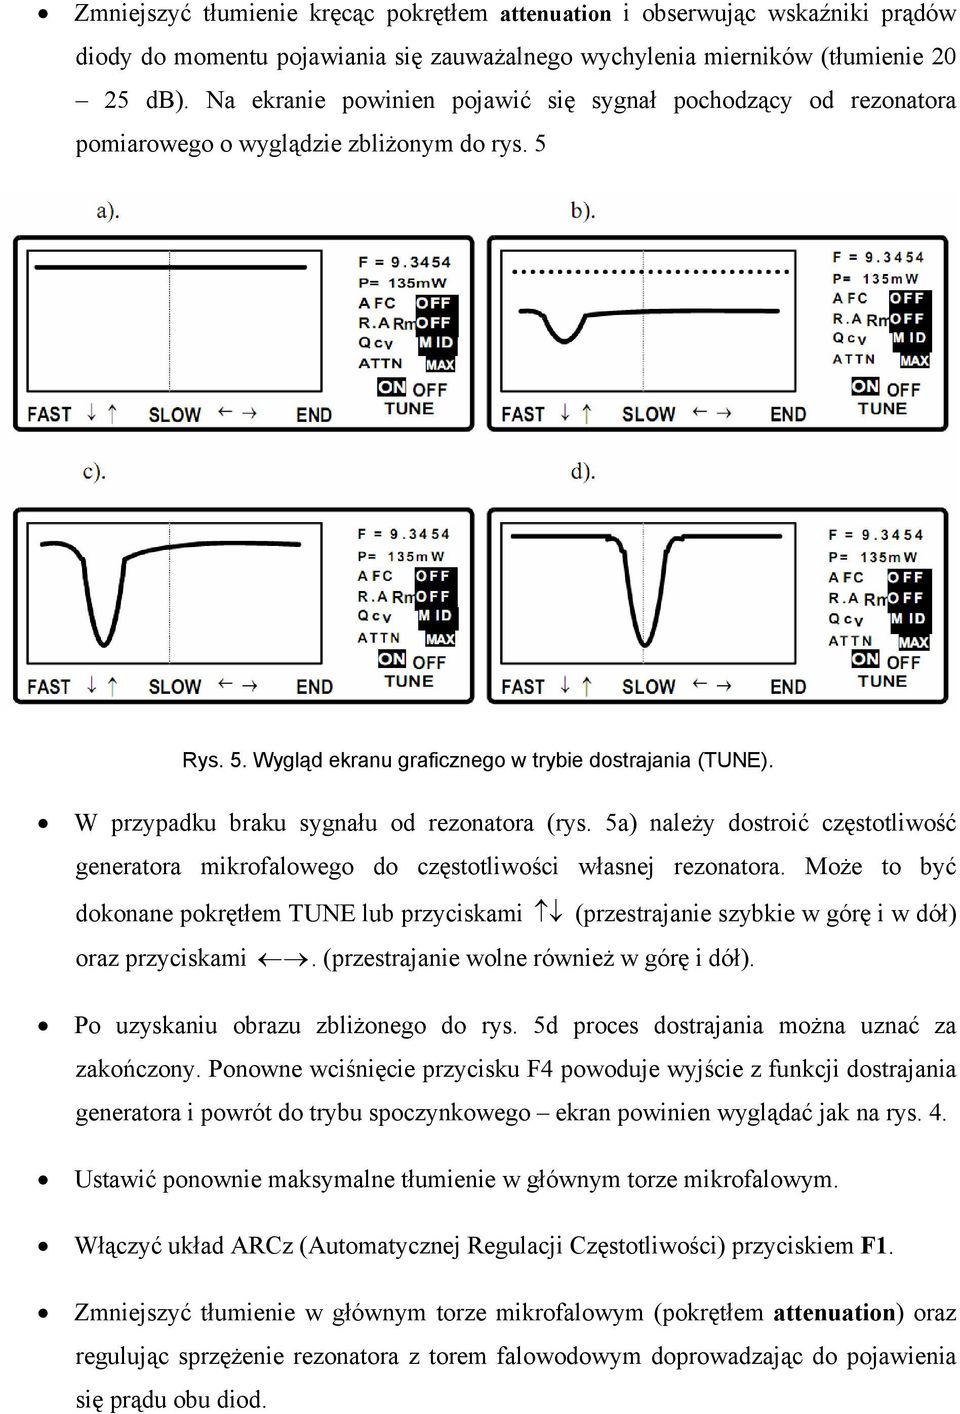 W przypadku braku sygnału od rezonatora (rys. 5a) należy dostroić częstotliwość generatora mikrofalowego do częstotliwości własnej rezonatora.